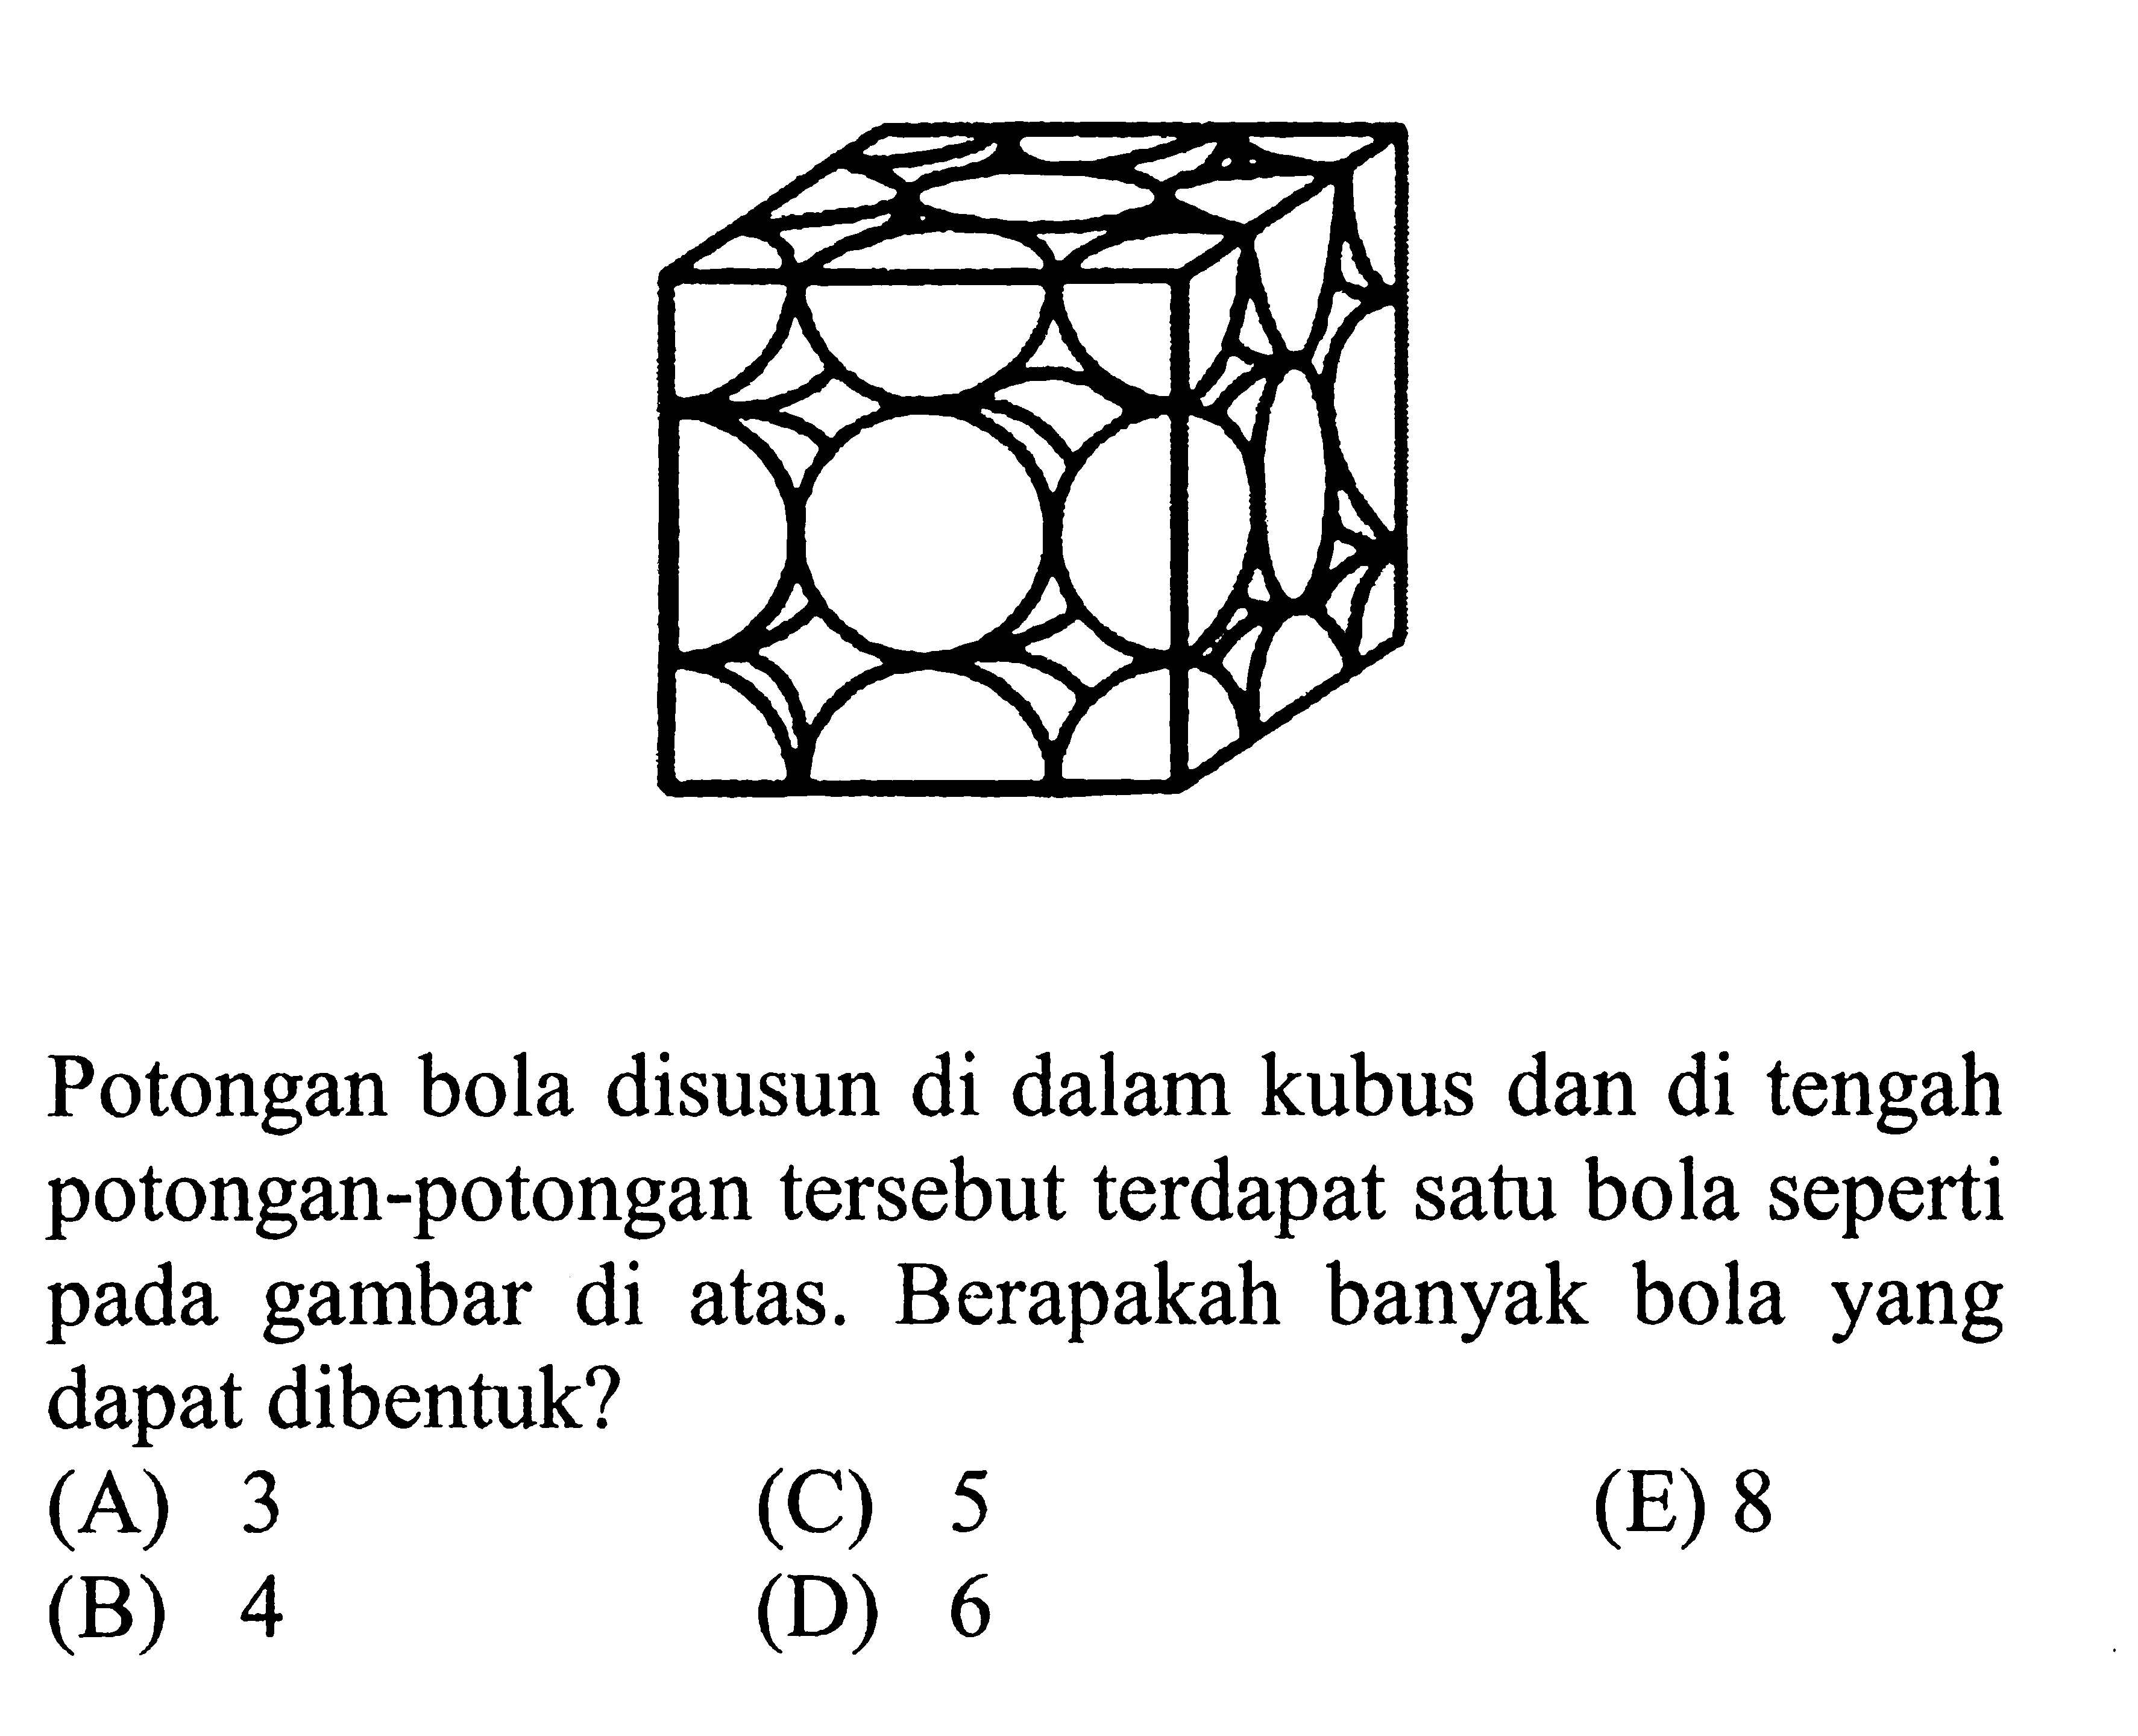 Potongan bola disusun di dalam kubus dan di tengah potongan-potongan tersebut terdapat satu bola seperti pada gambar atas. Berapakah banyak bola yang di dapat dibentuk? (A)3 (C) 5 (E) 8 (B) 4 (D) 6